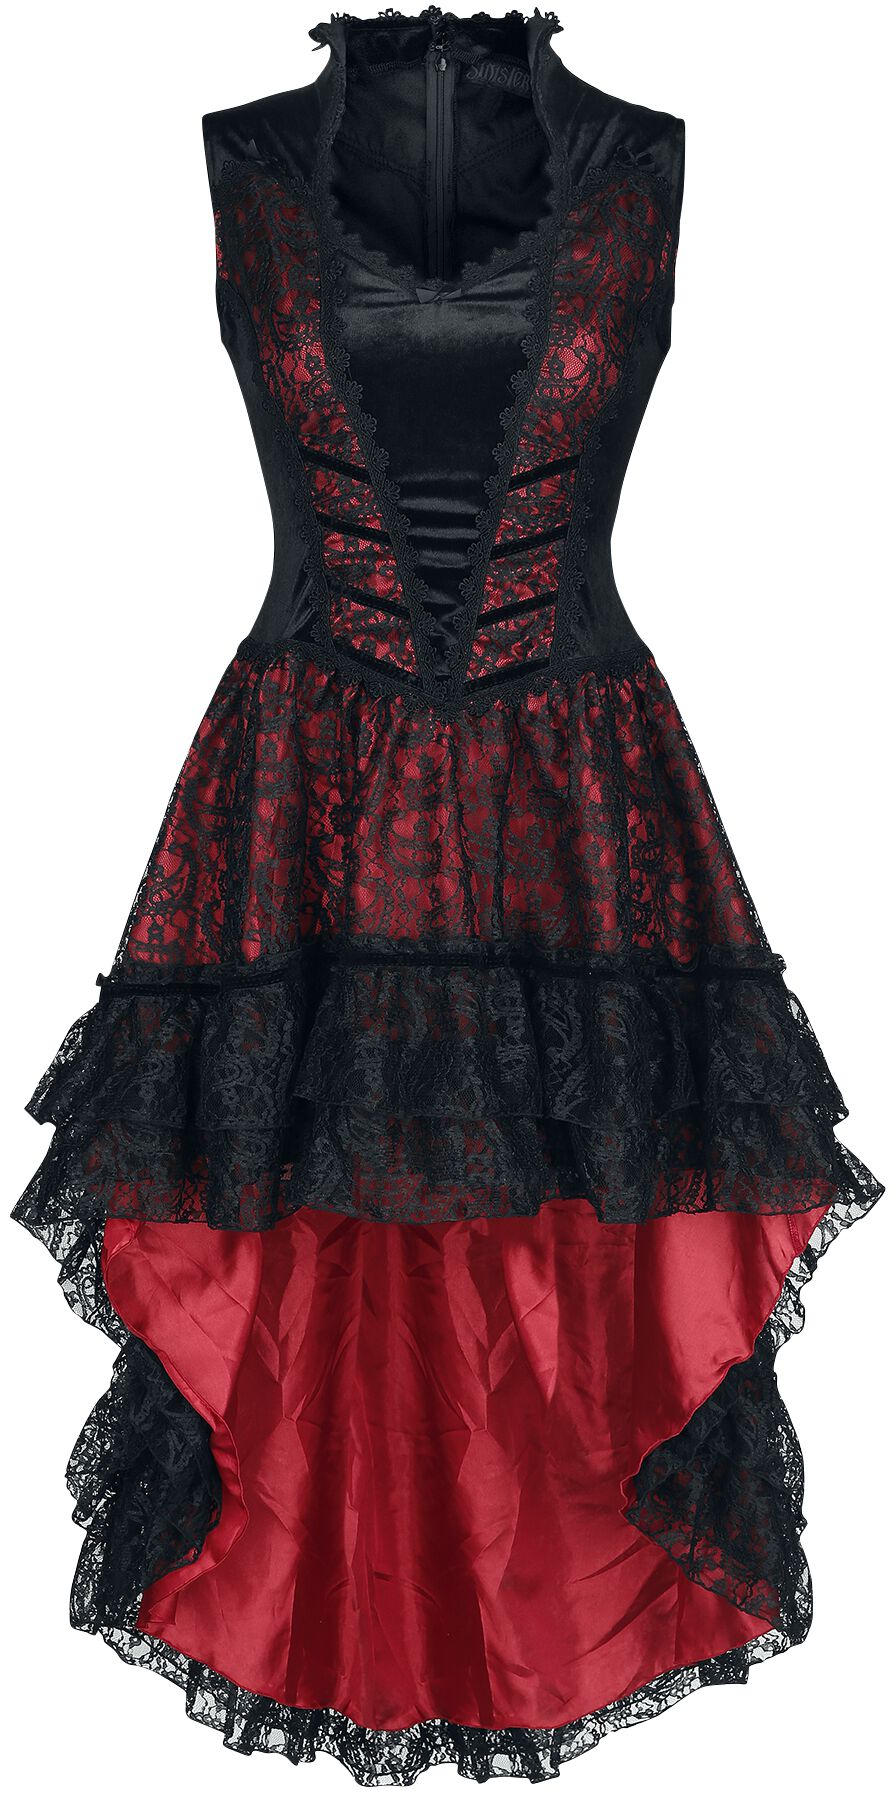 Sinister Gothic - Mittelalter Kleid knielang - Gothic Dress - XS bis 4XL - für Damen - Größe XXL - schwarz/rot